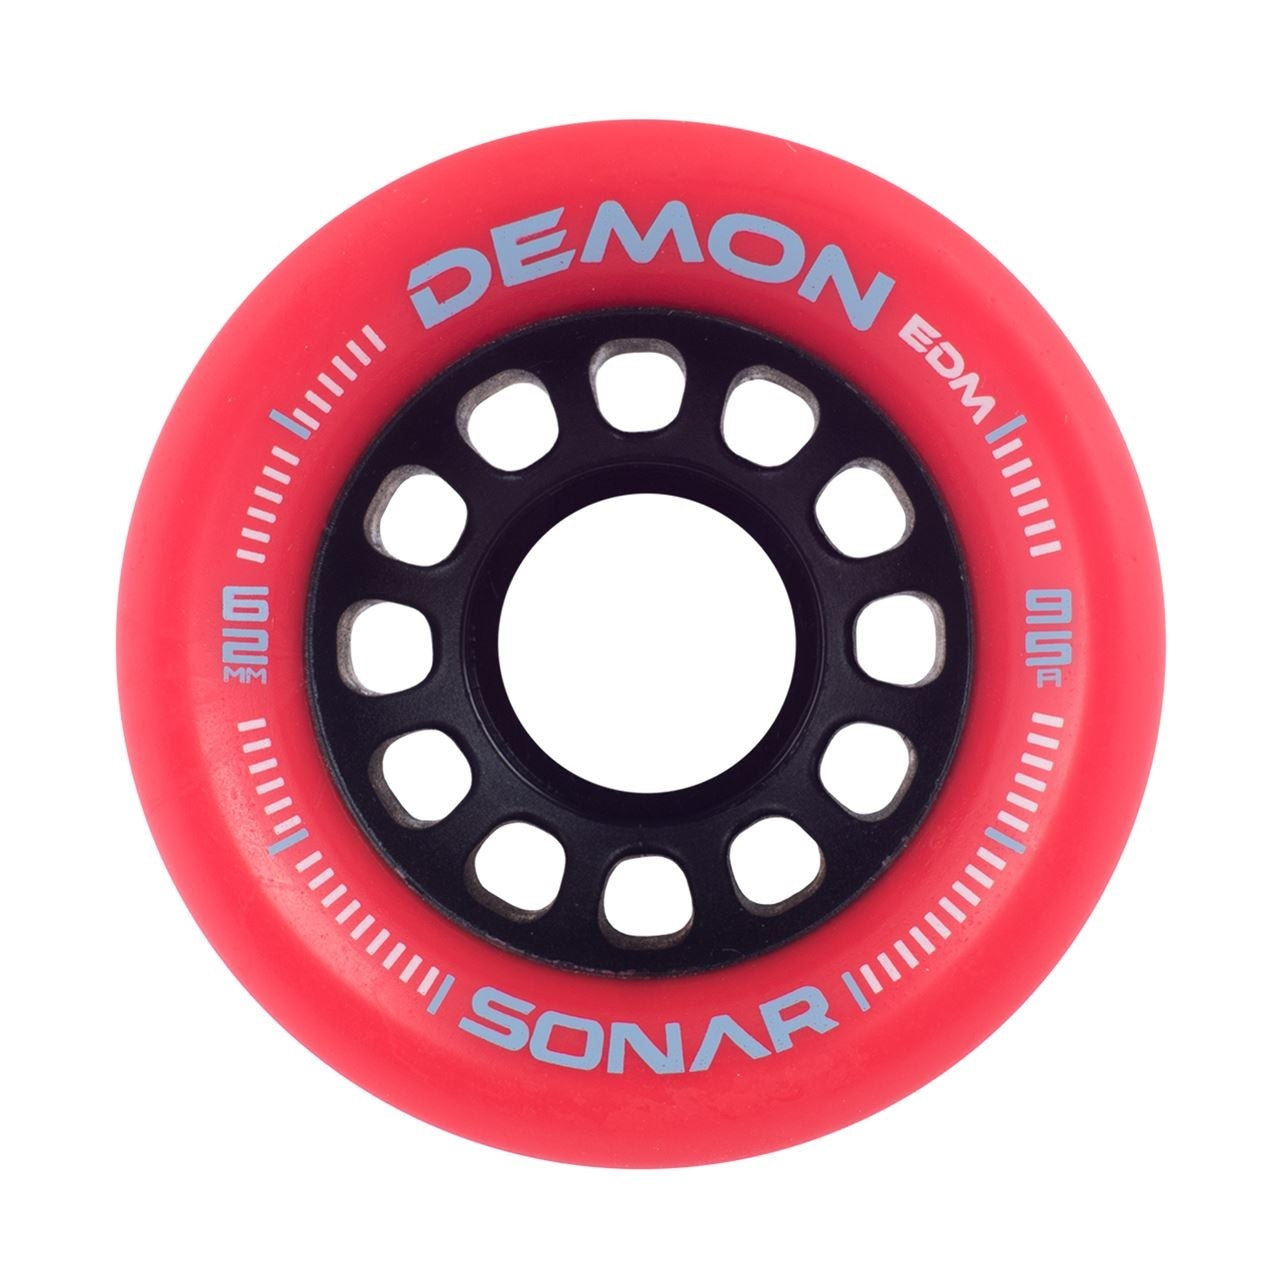 Ruedas para patines Sonar Demon EDM rojas, 62 mm, 95 a, juego de 4